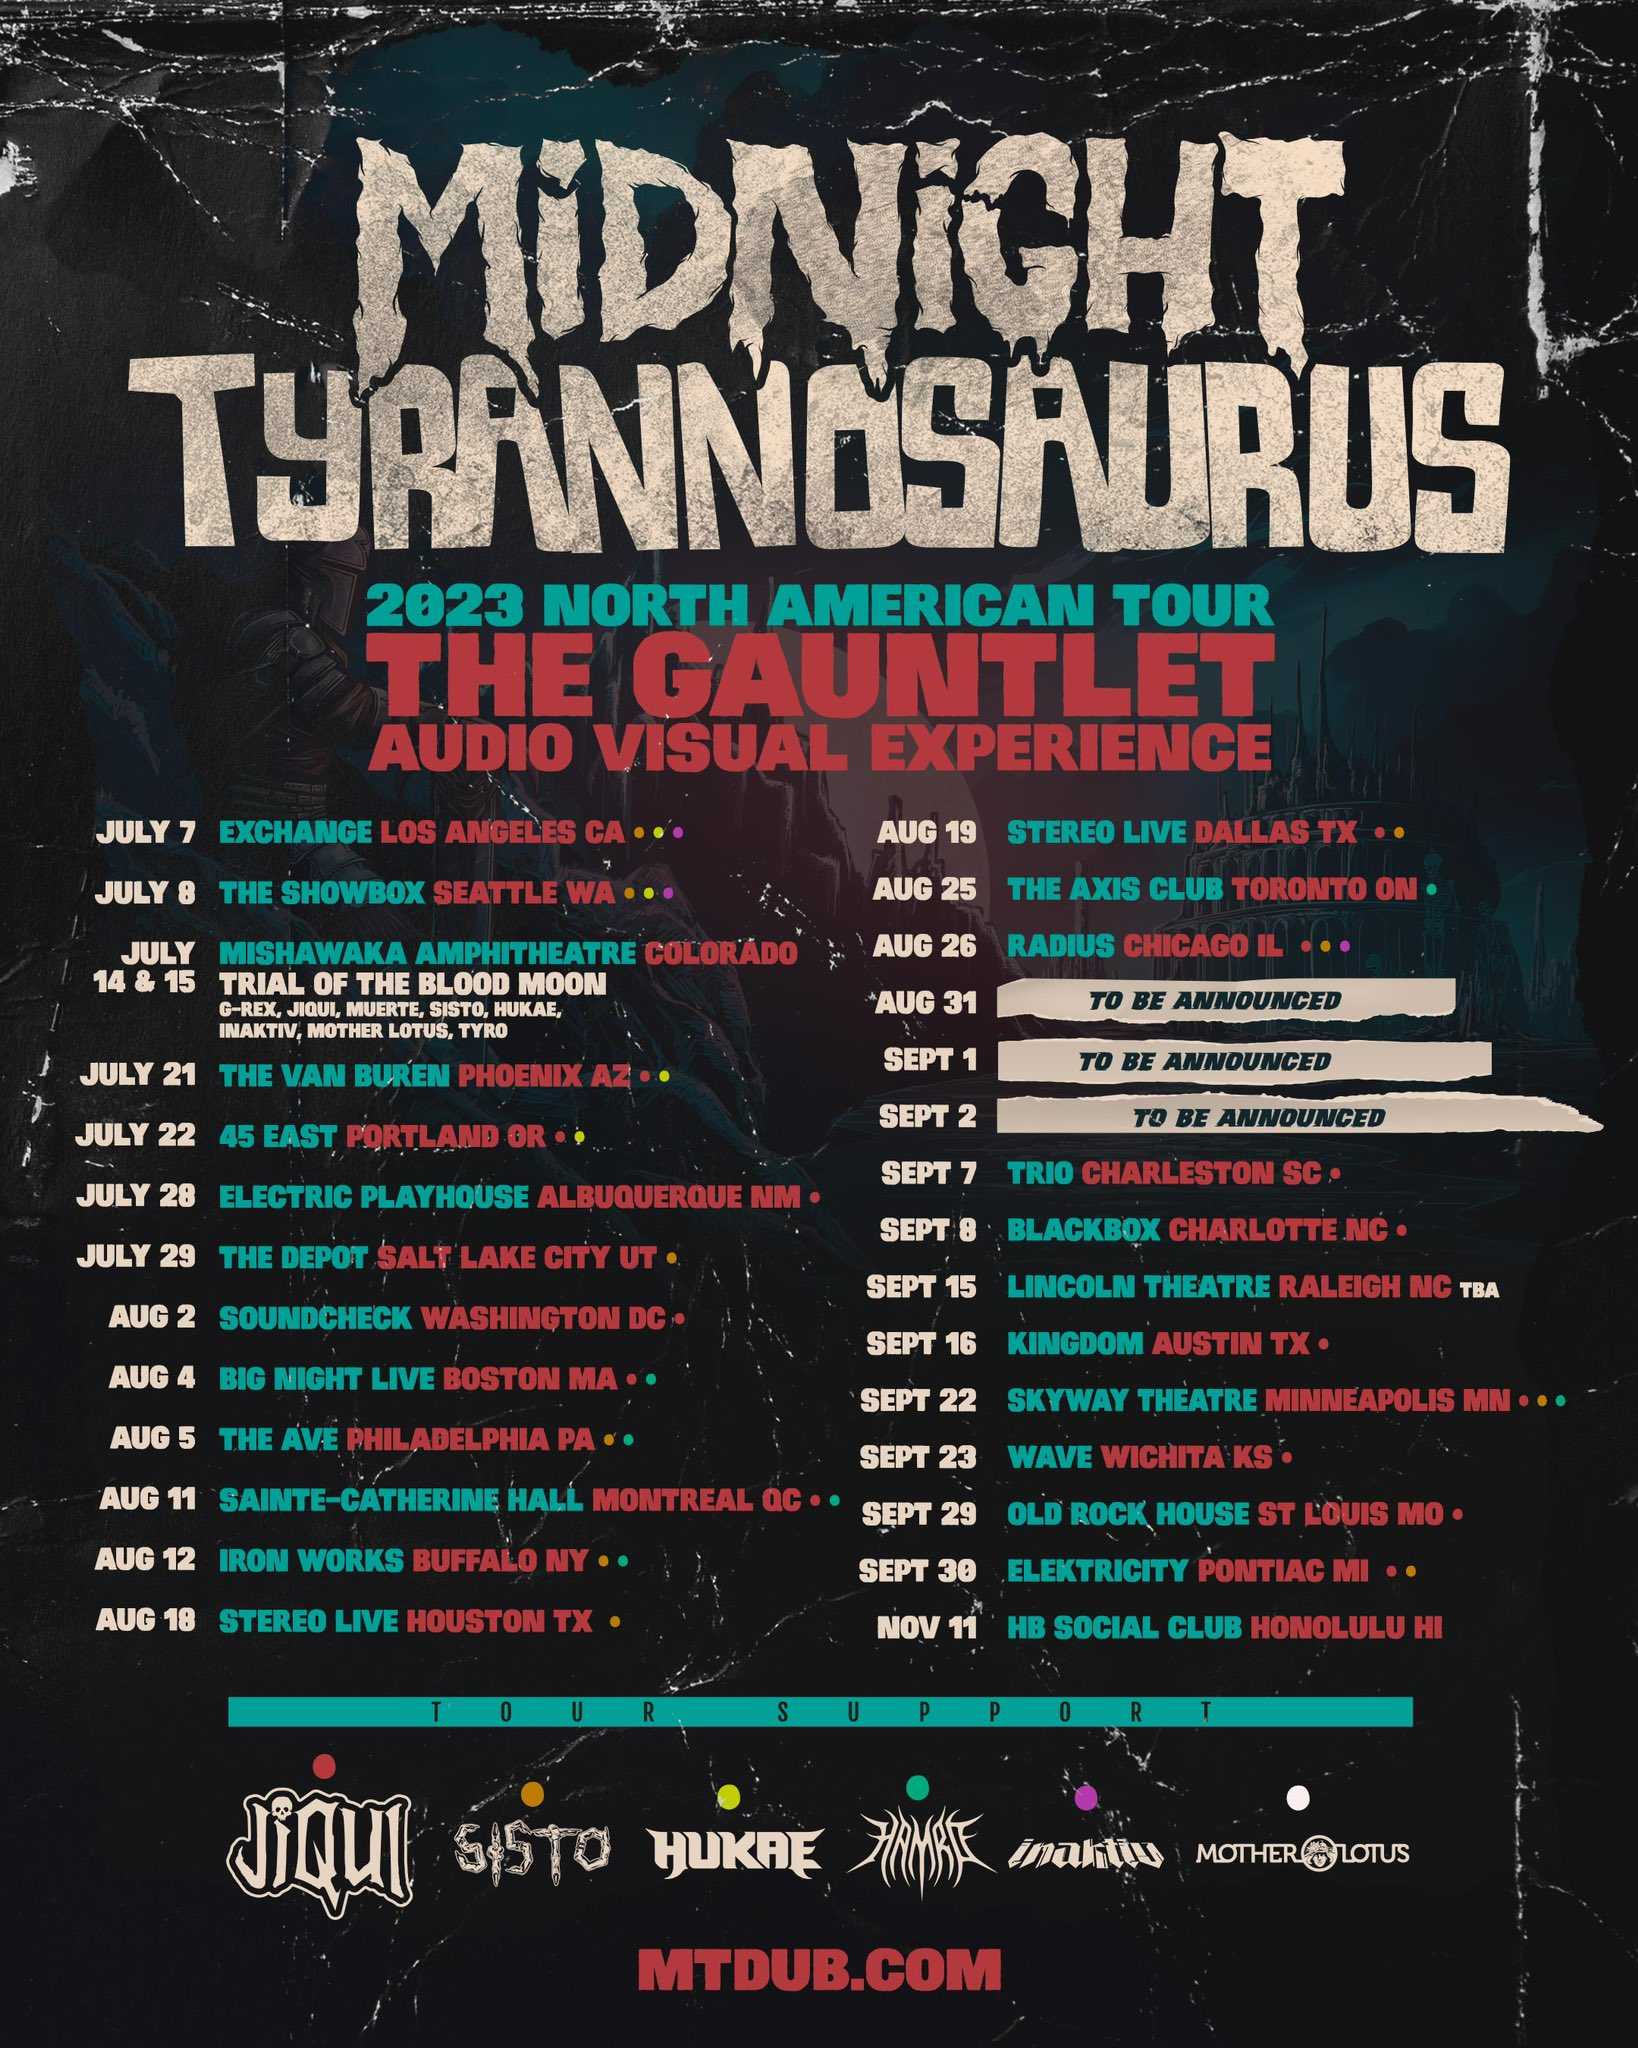 midnight-tyrannosaurus-the-gauntlet-tour-stereo-live-2023-08-18-houston